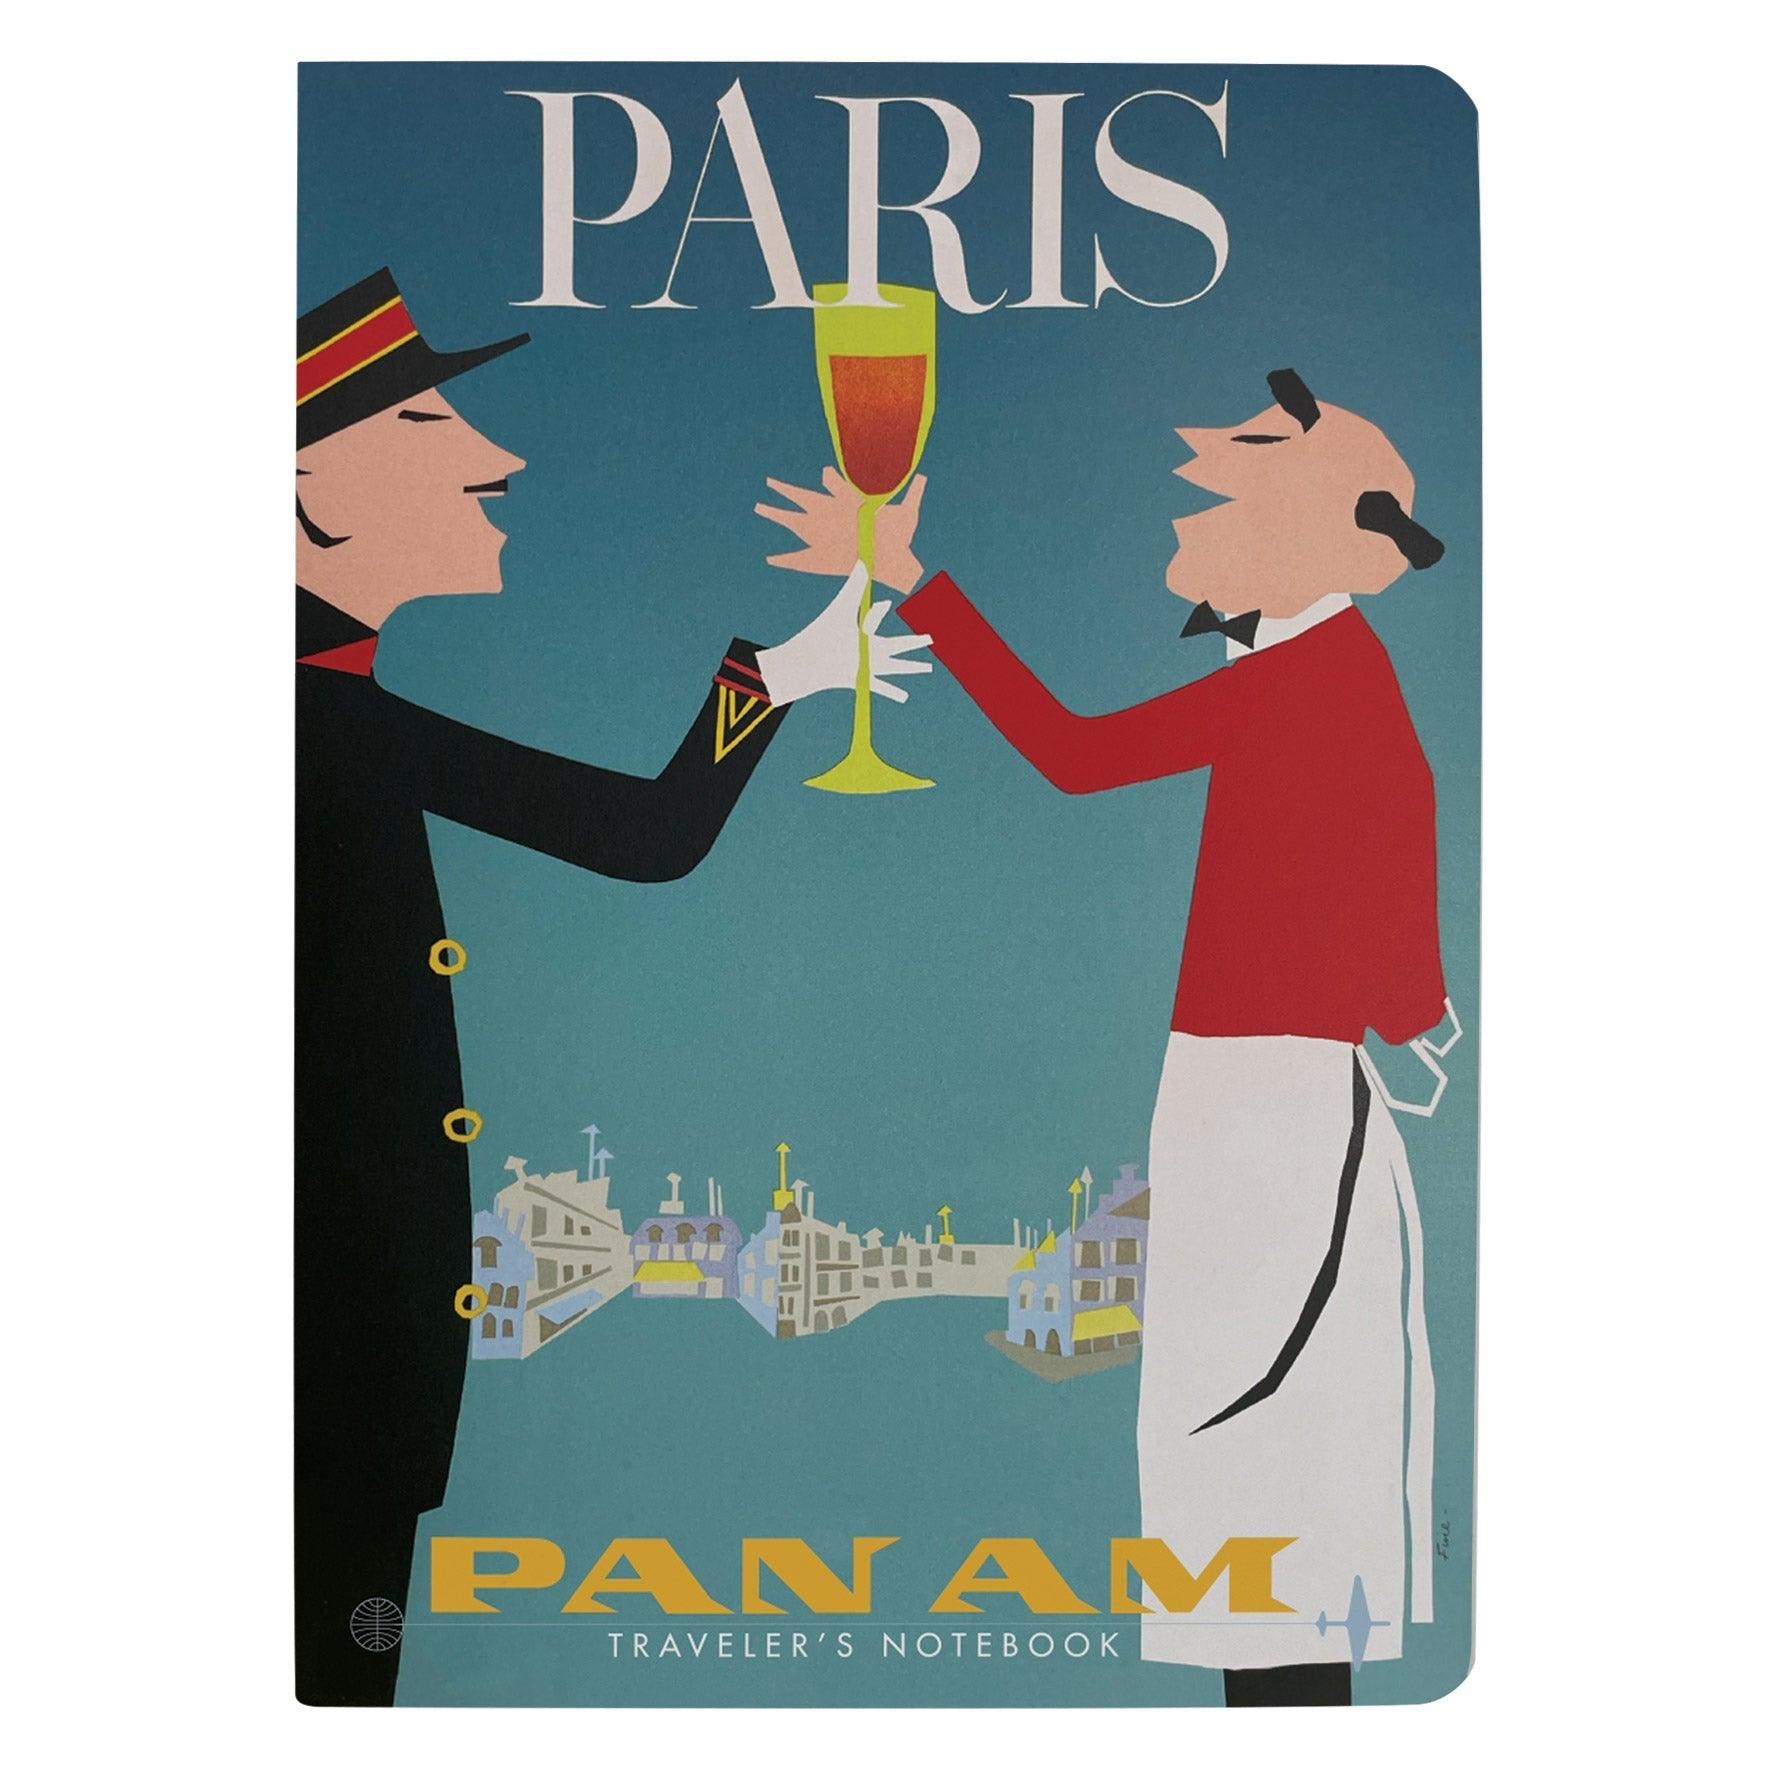 Pan Paris